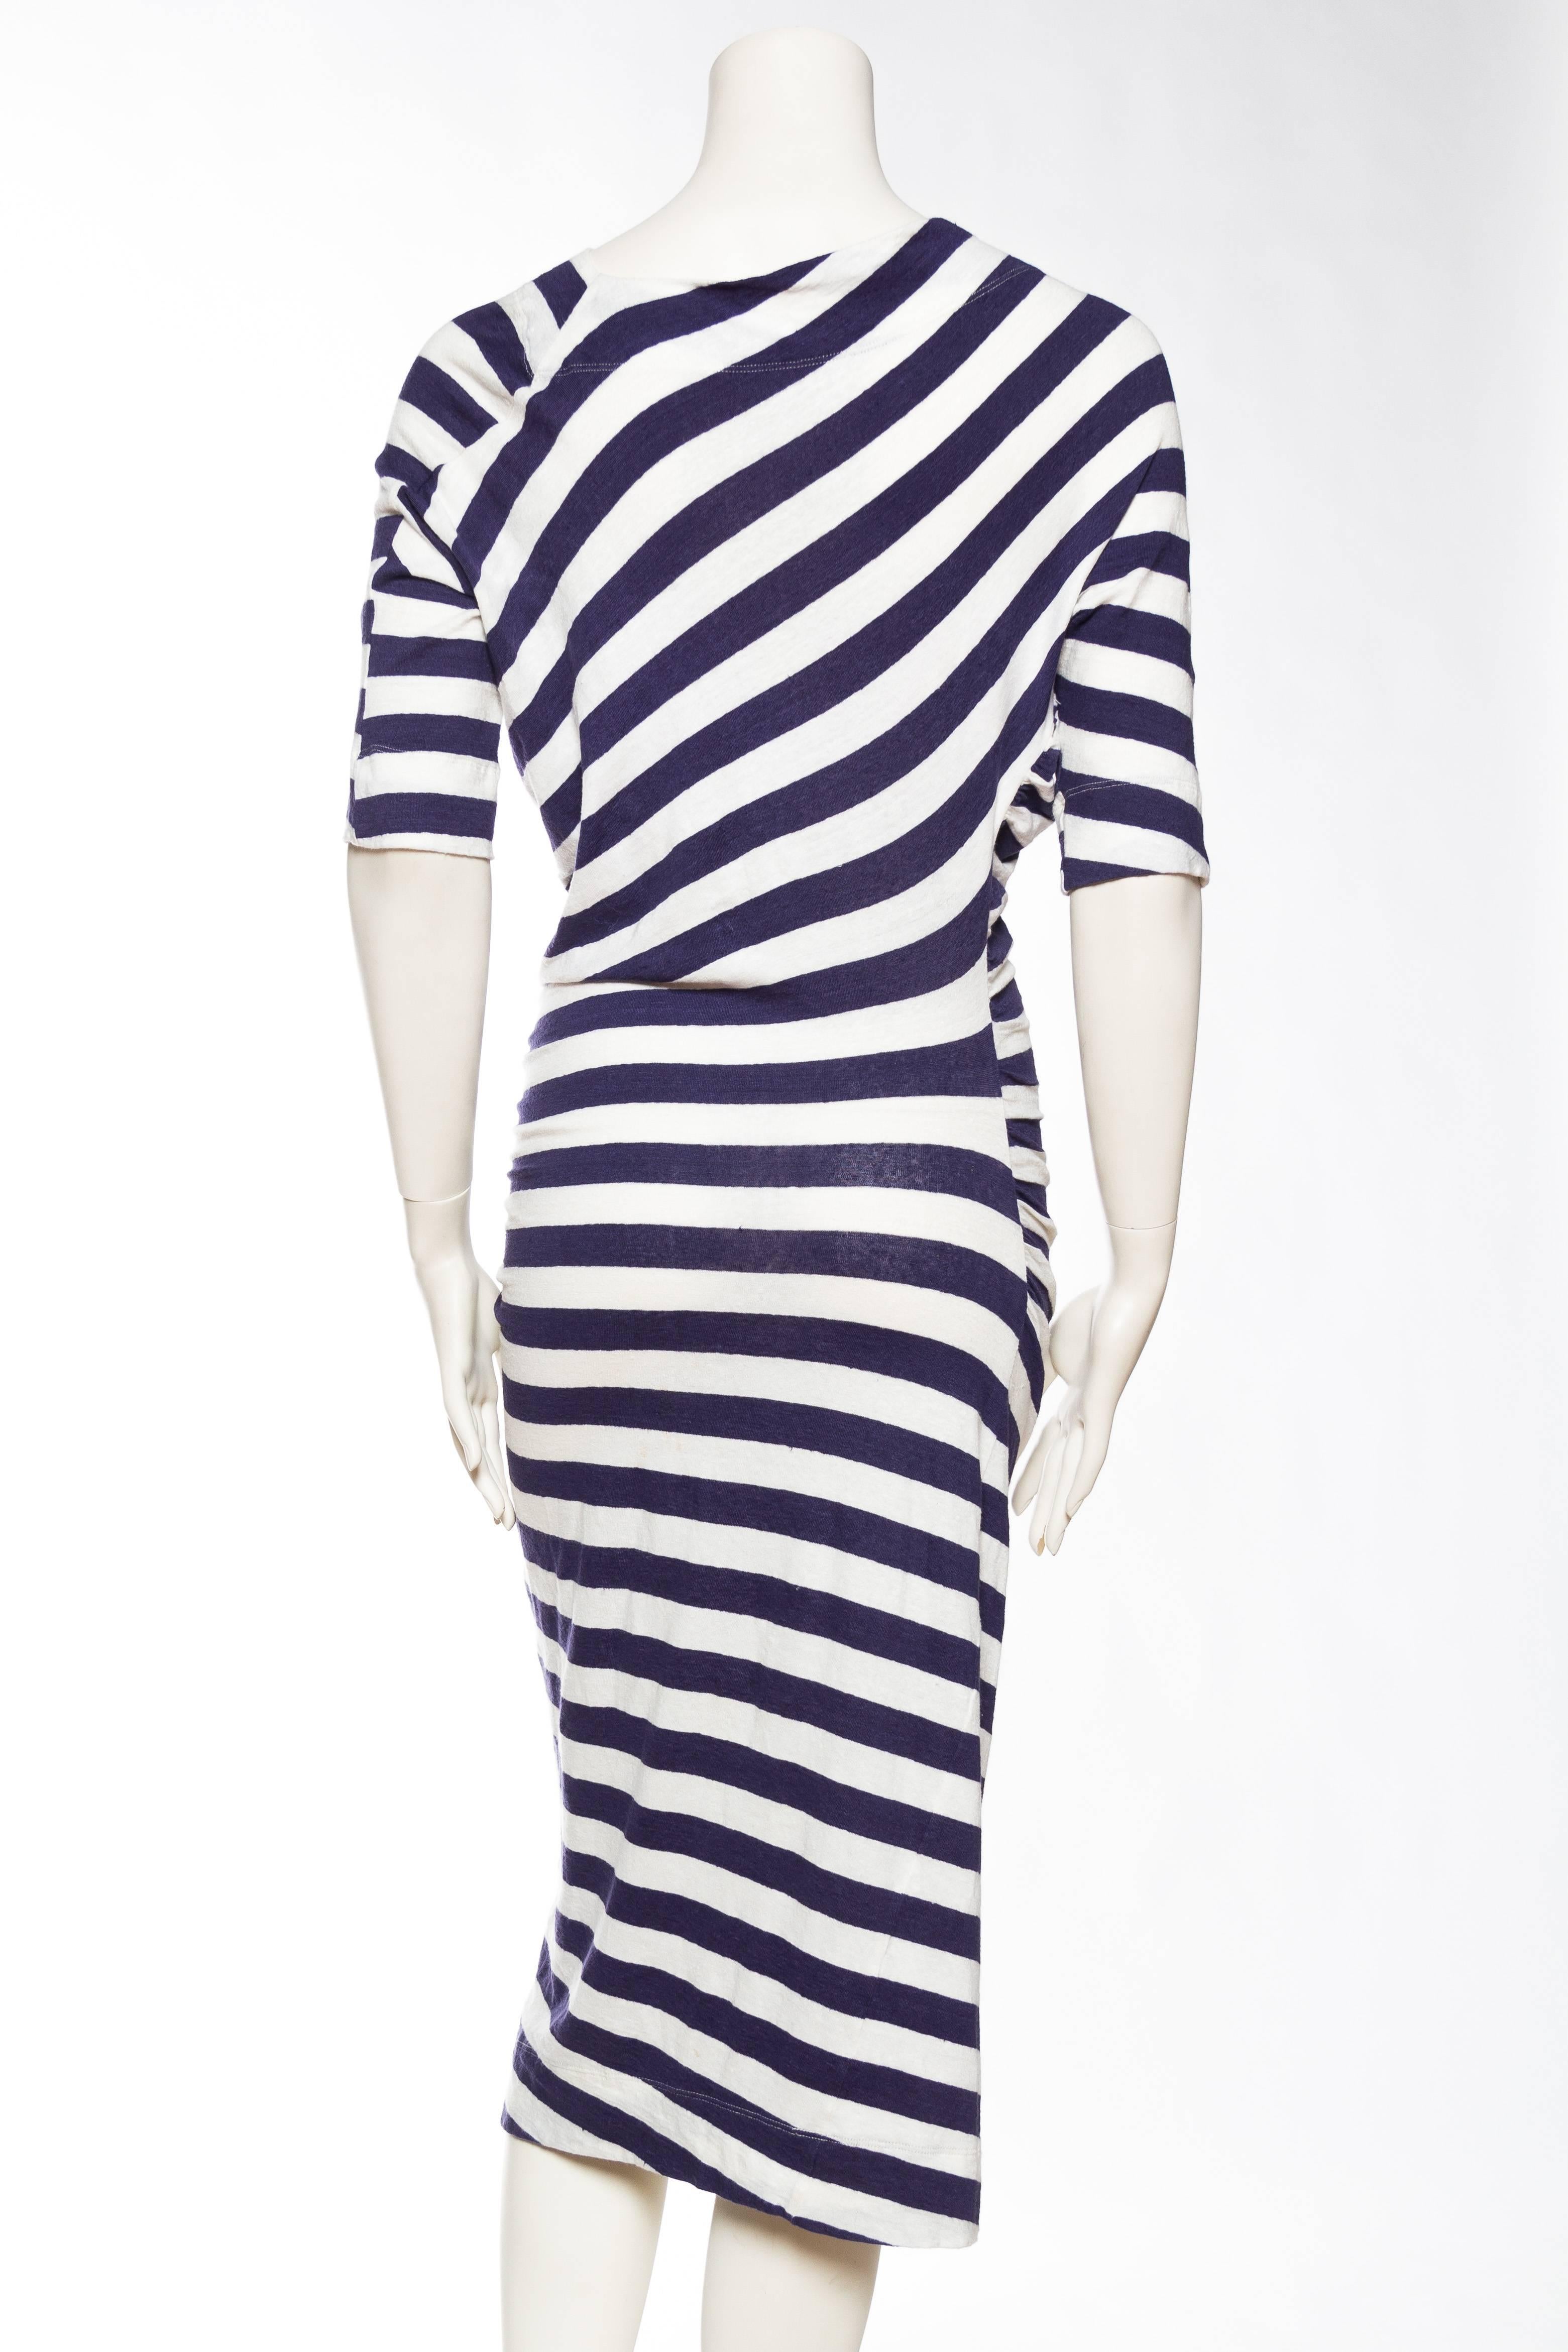 Vivienne Westwood Anglomania Linen/Cotton Knit Dress 2